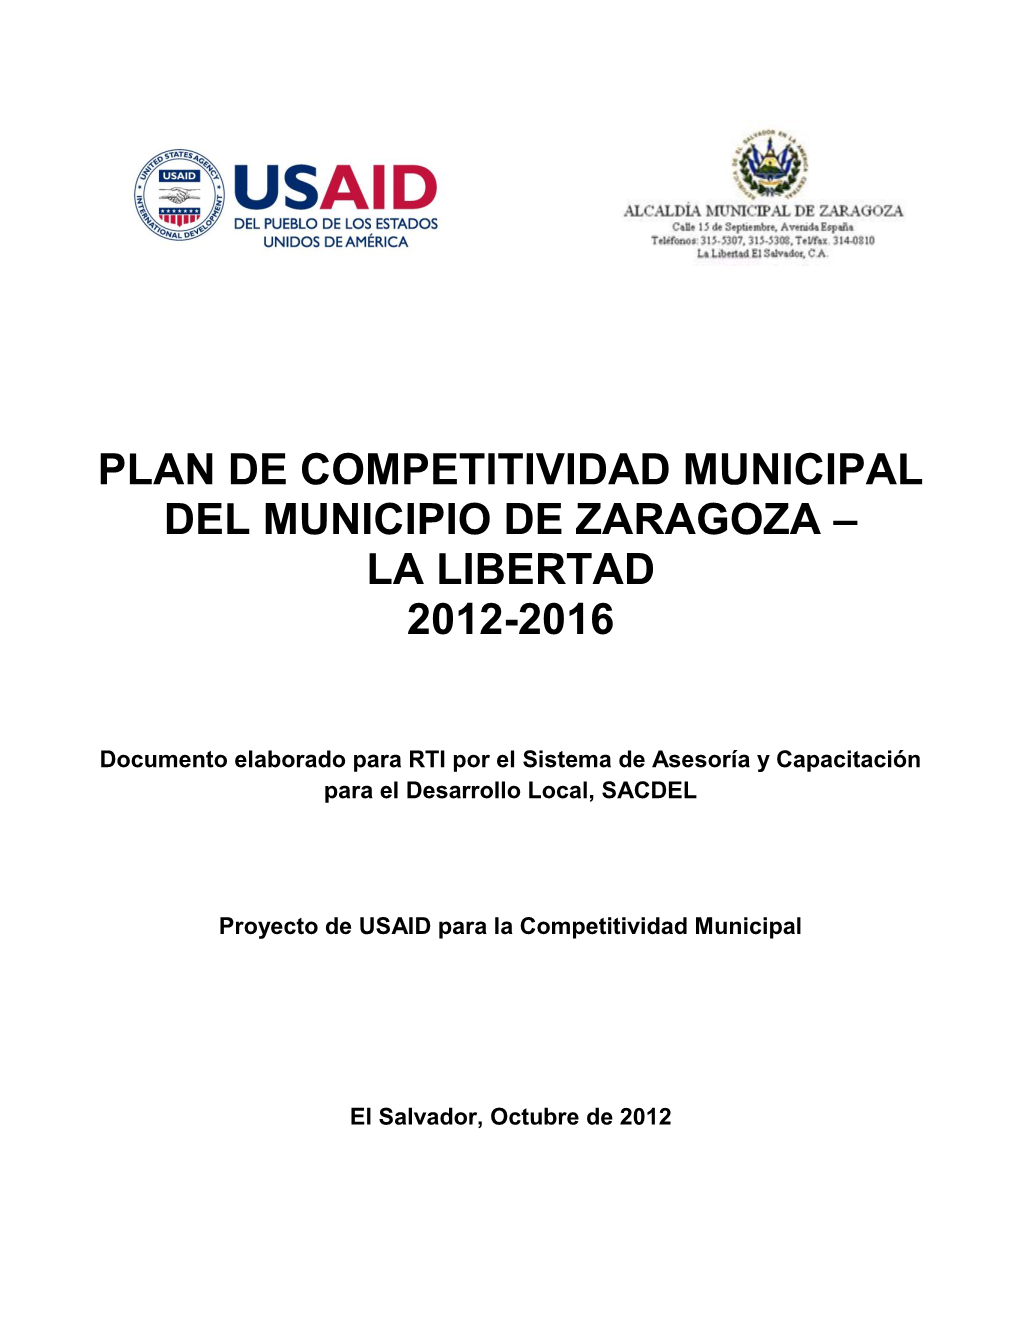 Plan De Competitividad Municipal Del Municipio De Zaragoza – La Libertad 2012-2016